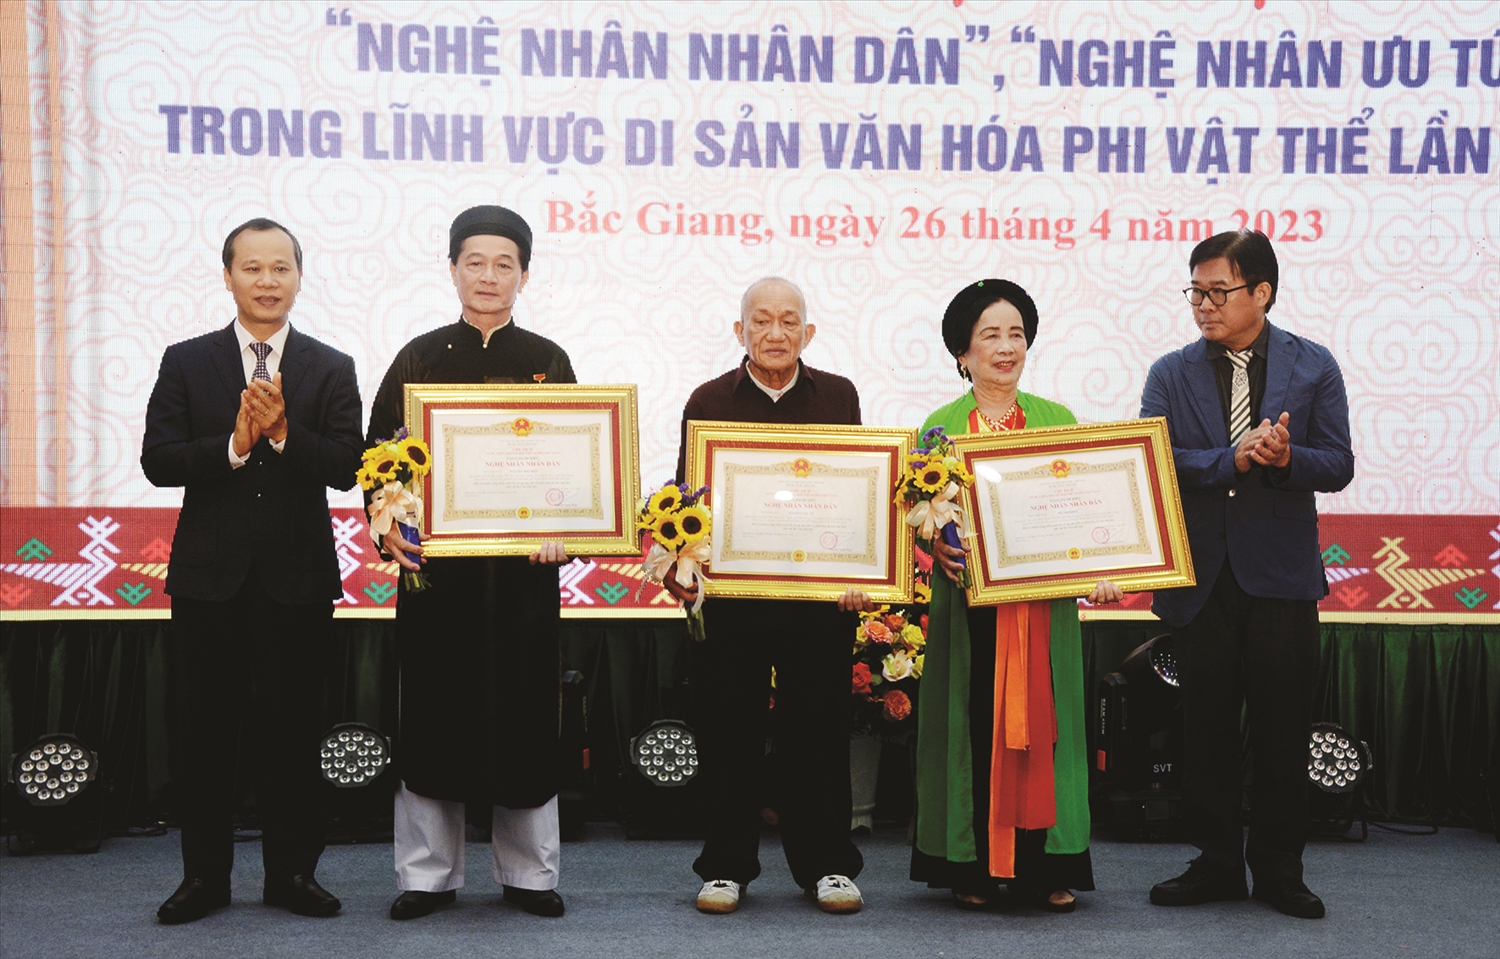 Các nghệ nhân: Nguyễn Phú Hiệp (thứ hai từ trái qua), Nguyễn Văn An (thứ ba từ trái qua), Đỗ Thị Khoa (thứ tư từ trái qua) đón nhận danh hiệu Nghệ nhân Nhân dân trong lĩnh vực Di sản văn hóa phi vật thể (năm 2023).